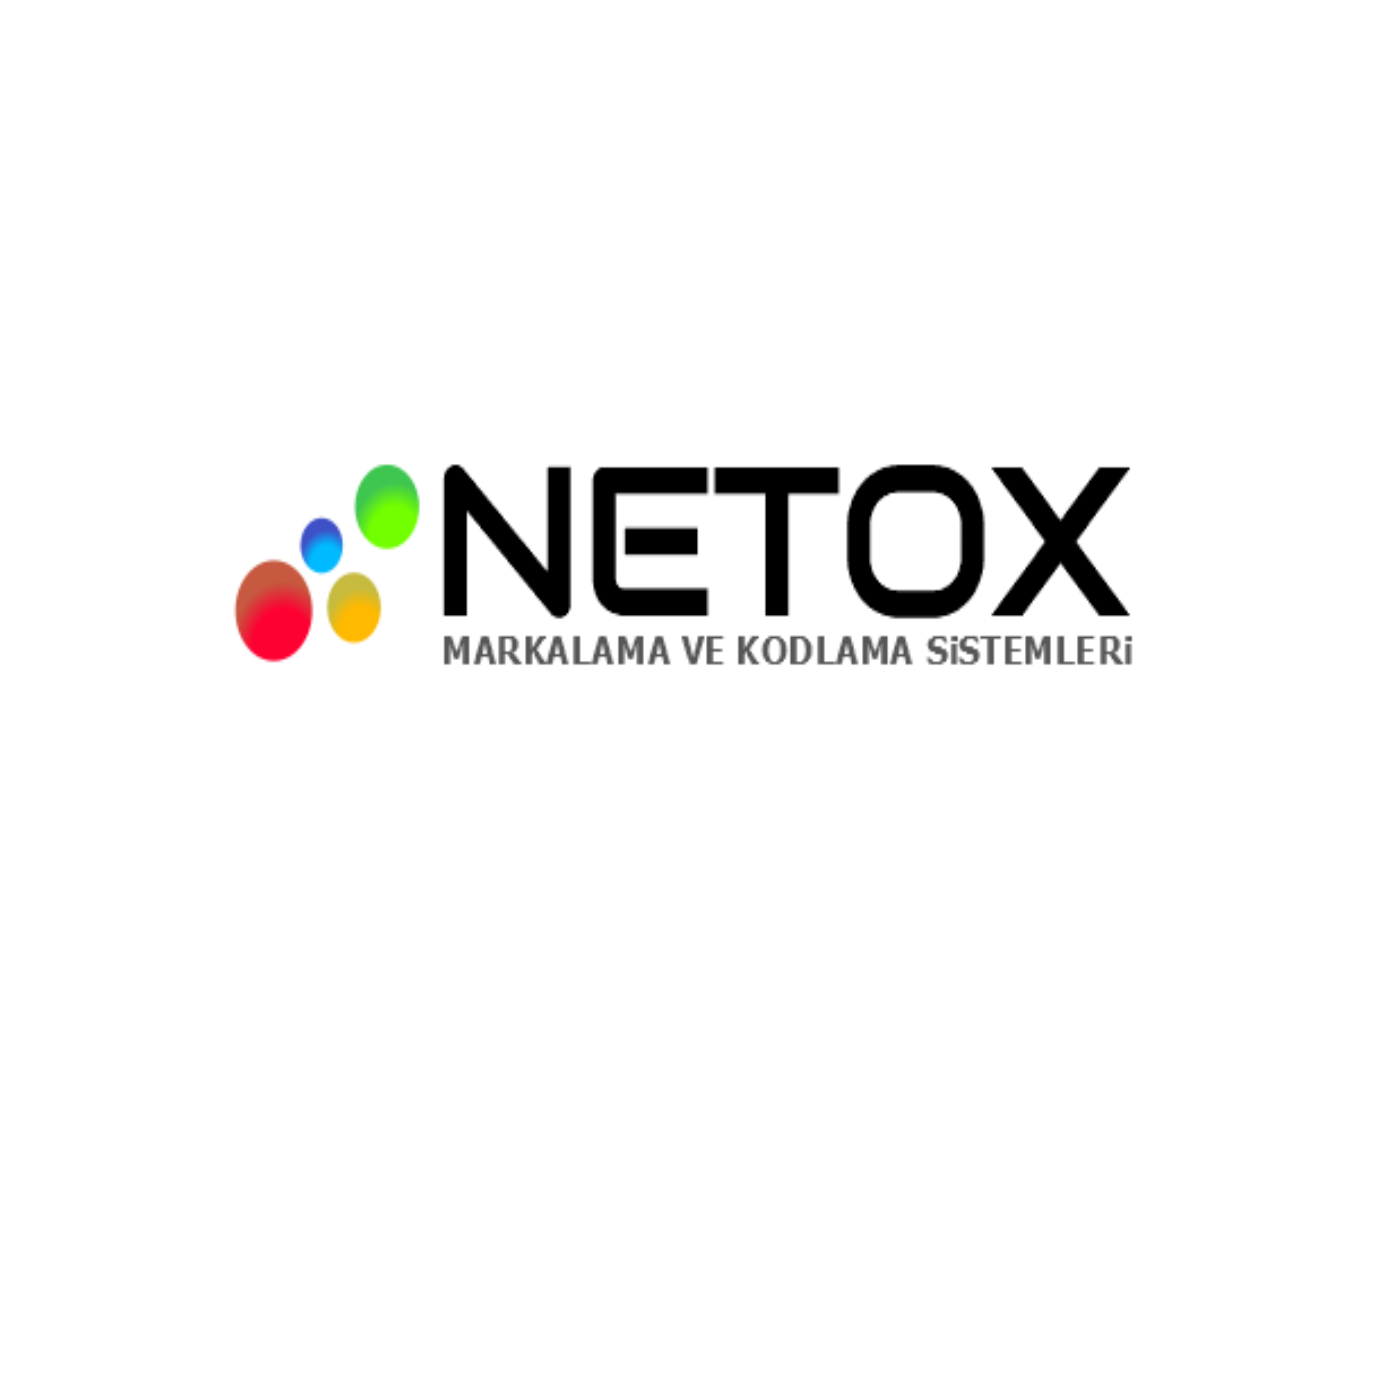 Netox Endüstriyel Kodlama Sistemleri